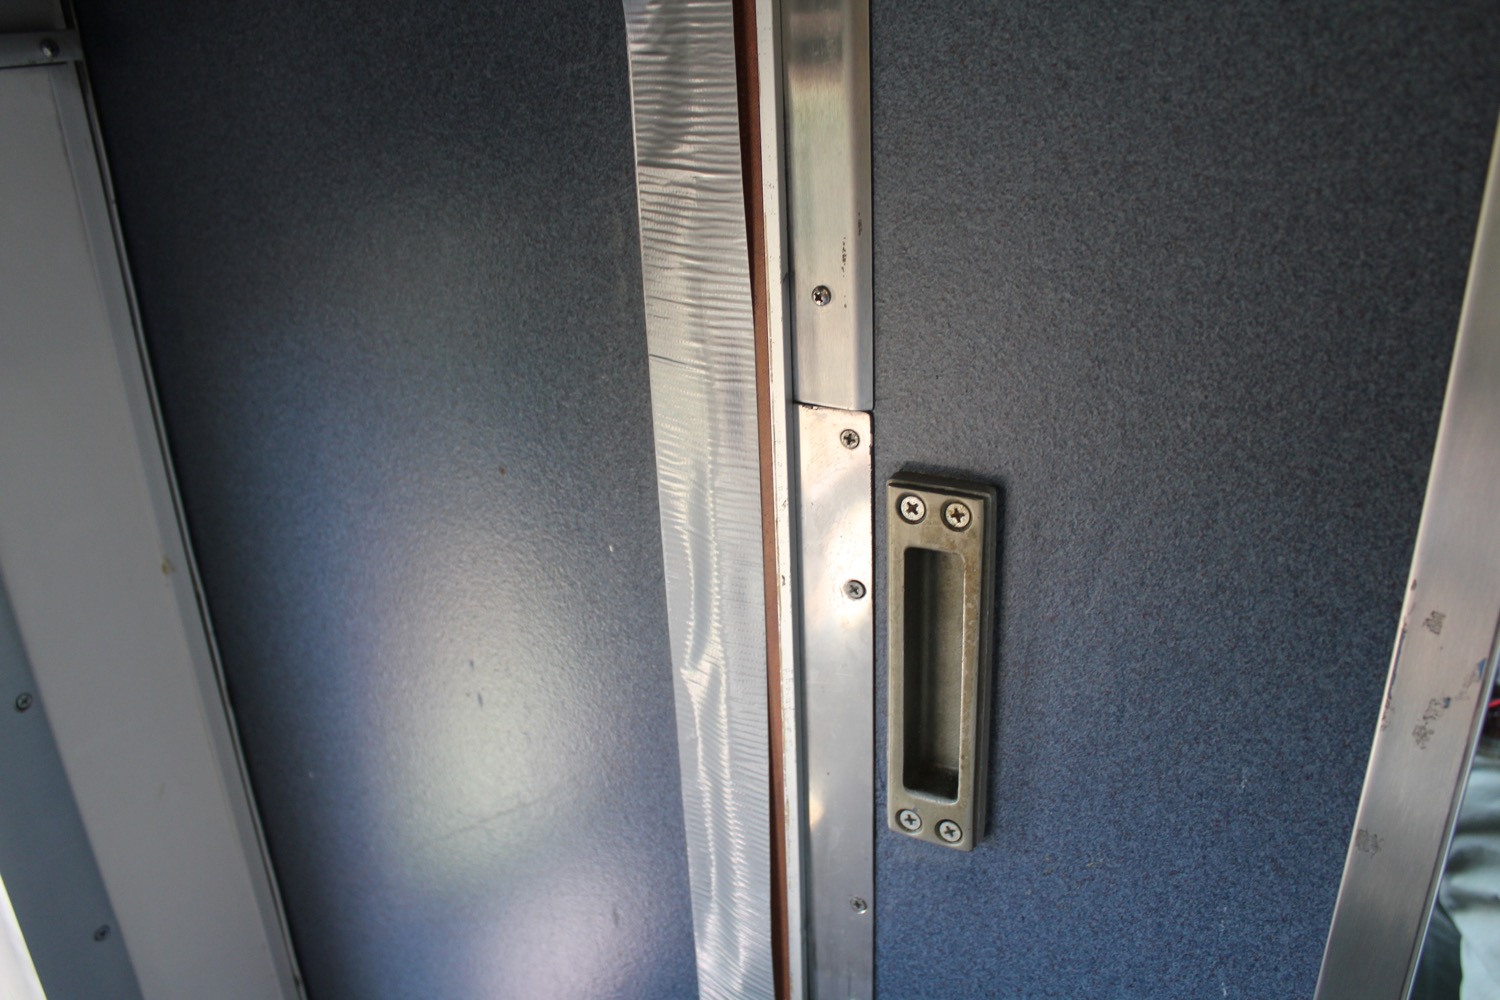 a metal door handle and a rectangular door handle